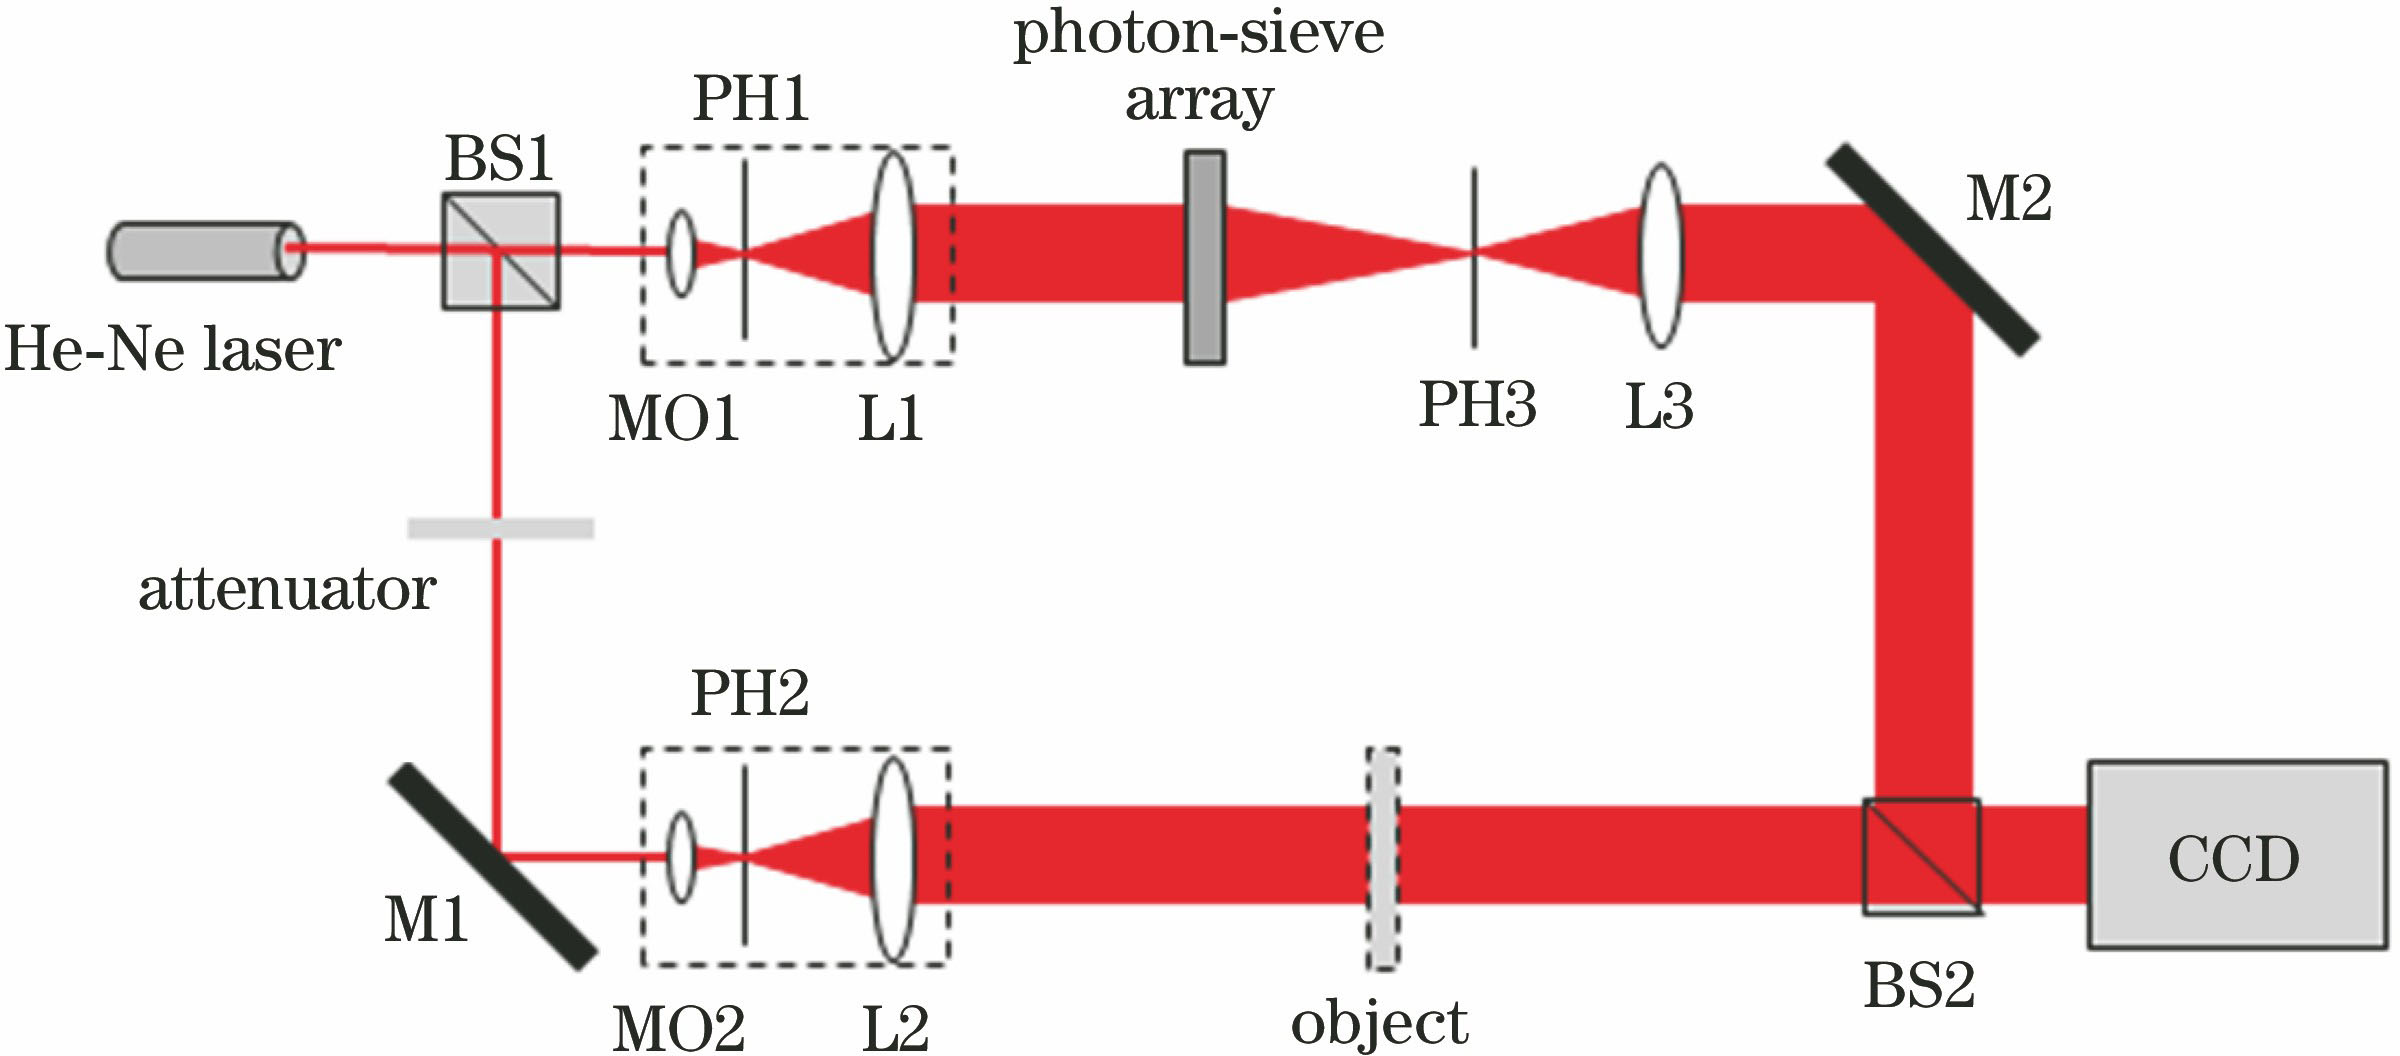 基于多焦点光子筛阵列的同轴相移全息技术. 光学学报